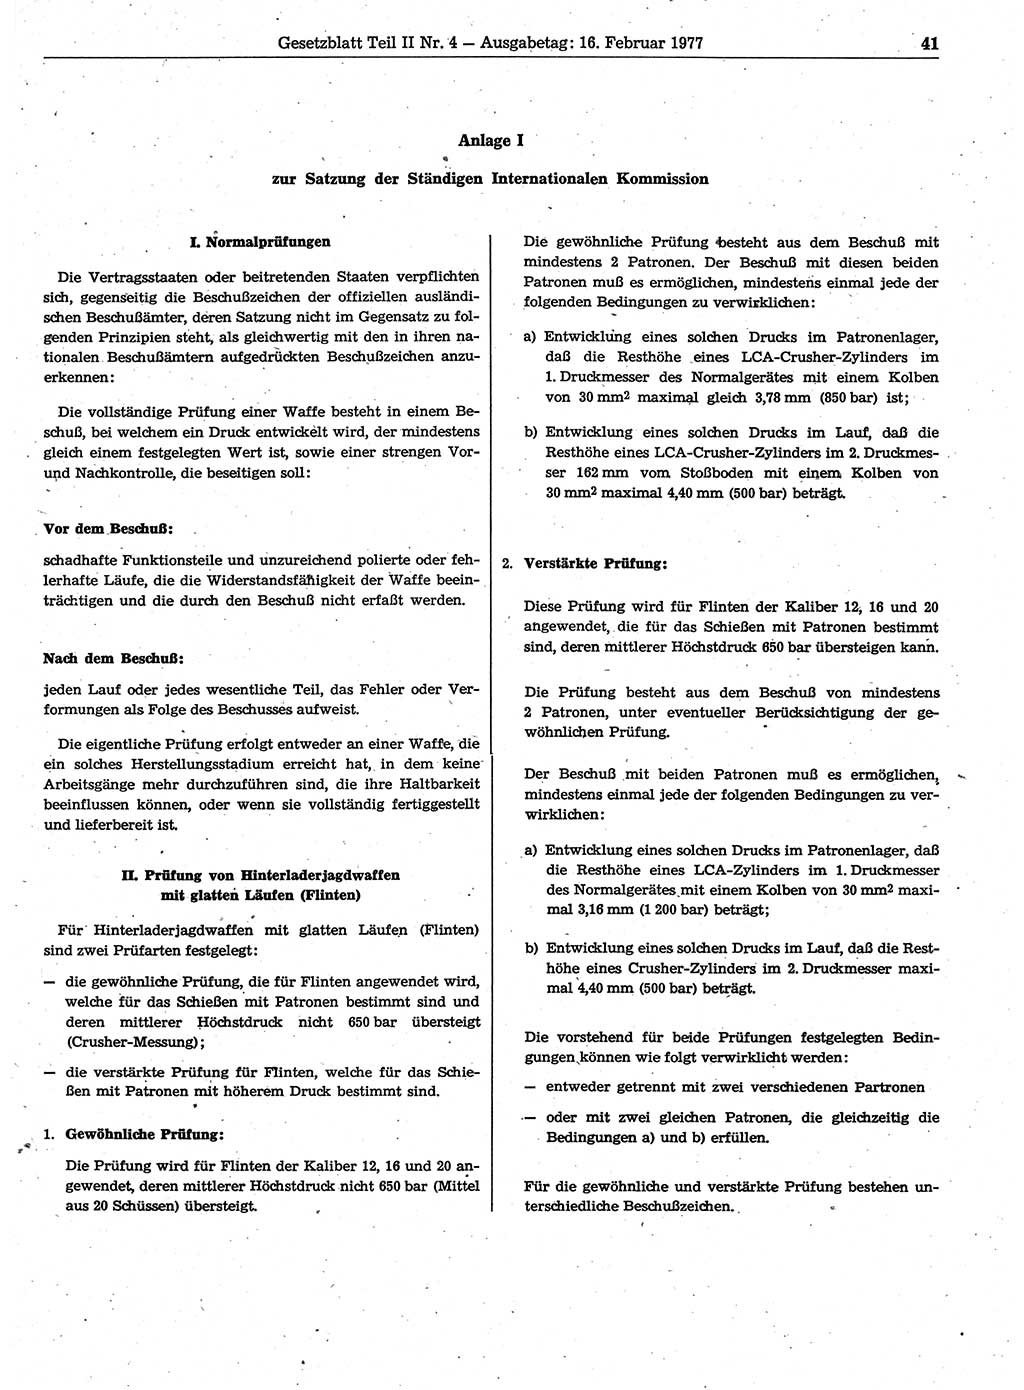 Gesetzblatt (GBl.) der Deutschen Demokratischen Republik (DDR) Teil ⅠⅠ 1977, Seite 41 (GBl. DDR ⅠⅠ 1977, S. 41)